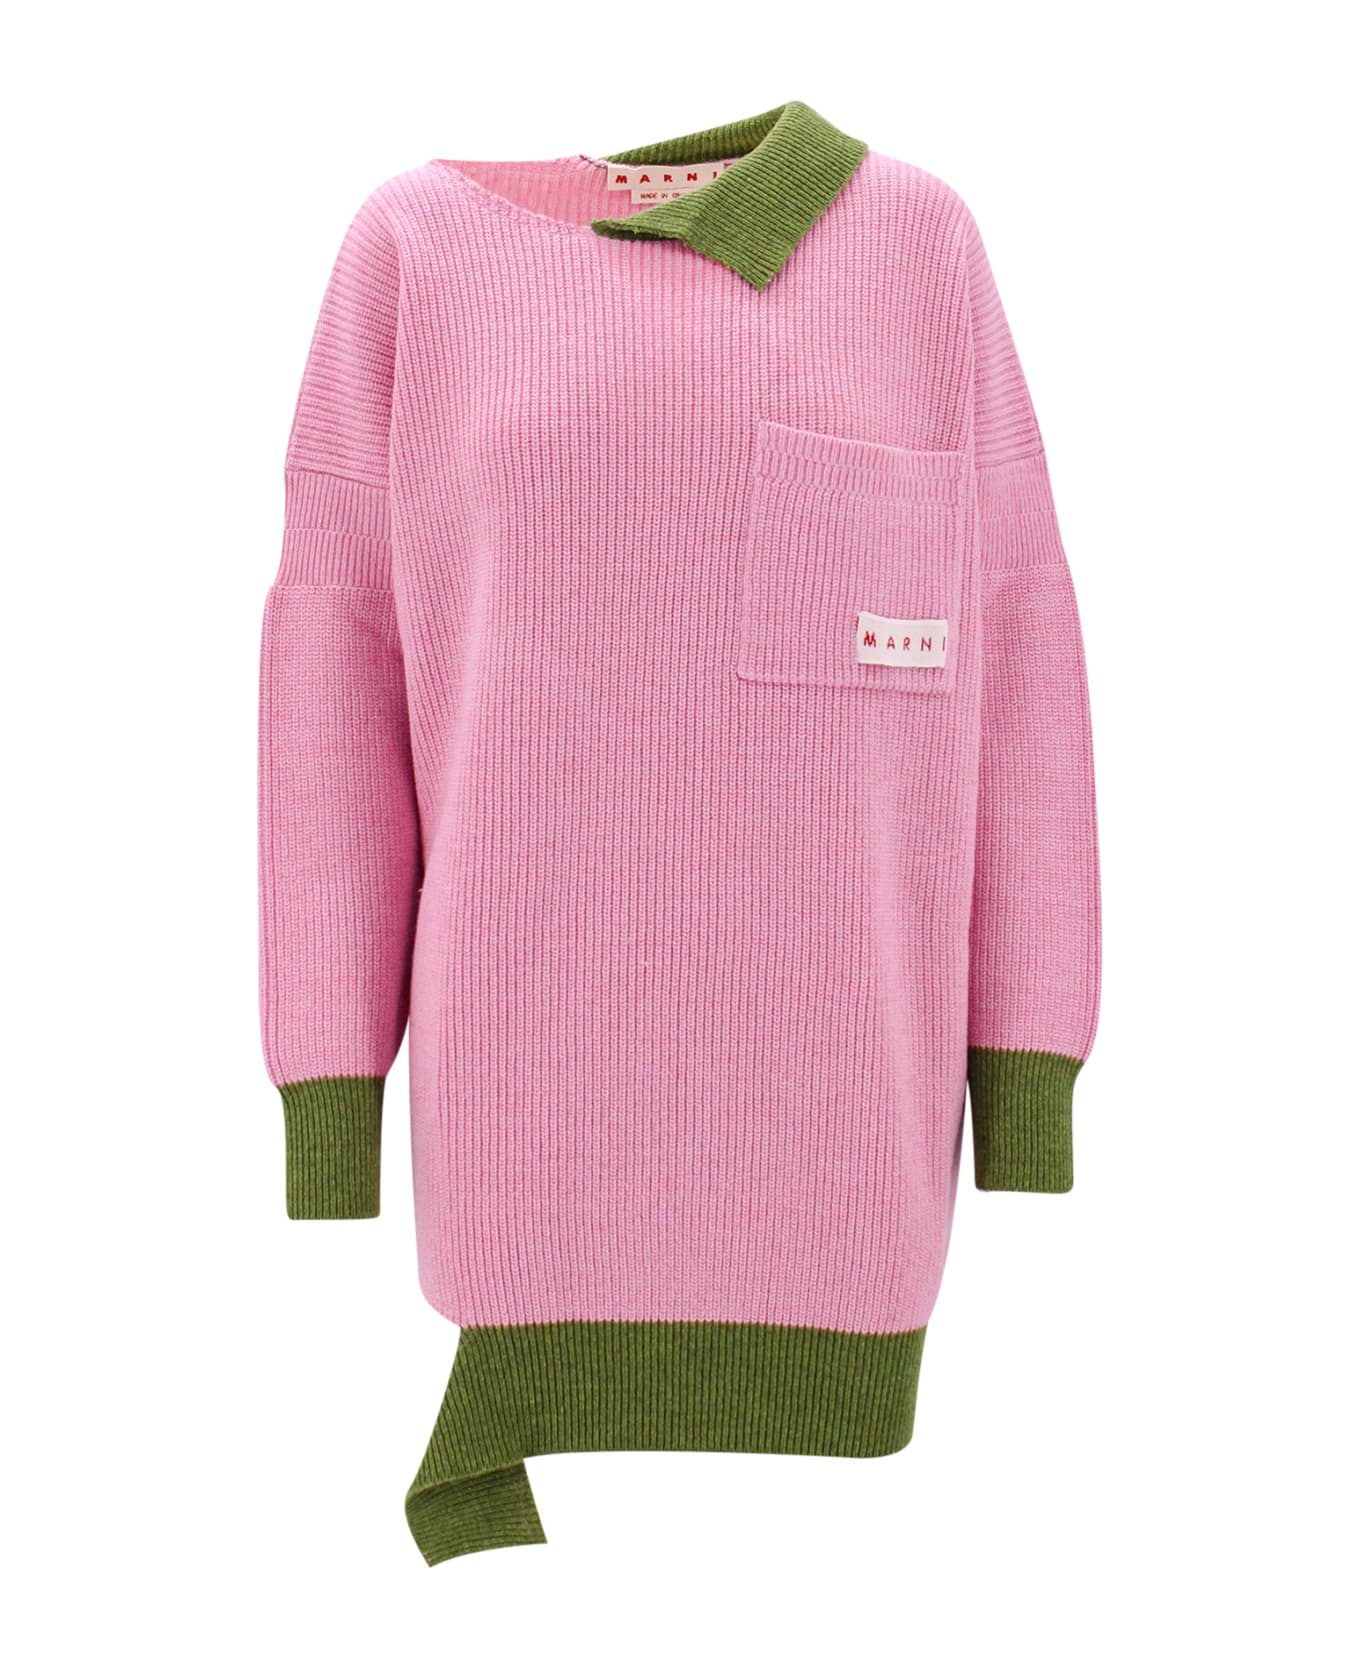 Marni Sweater - Pink ニットウェア